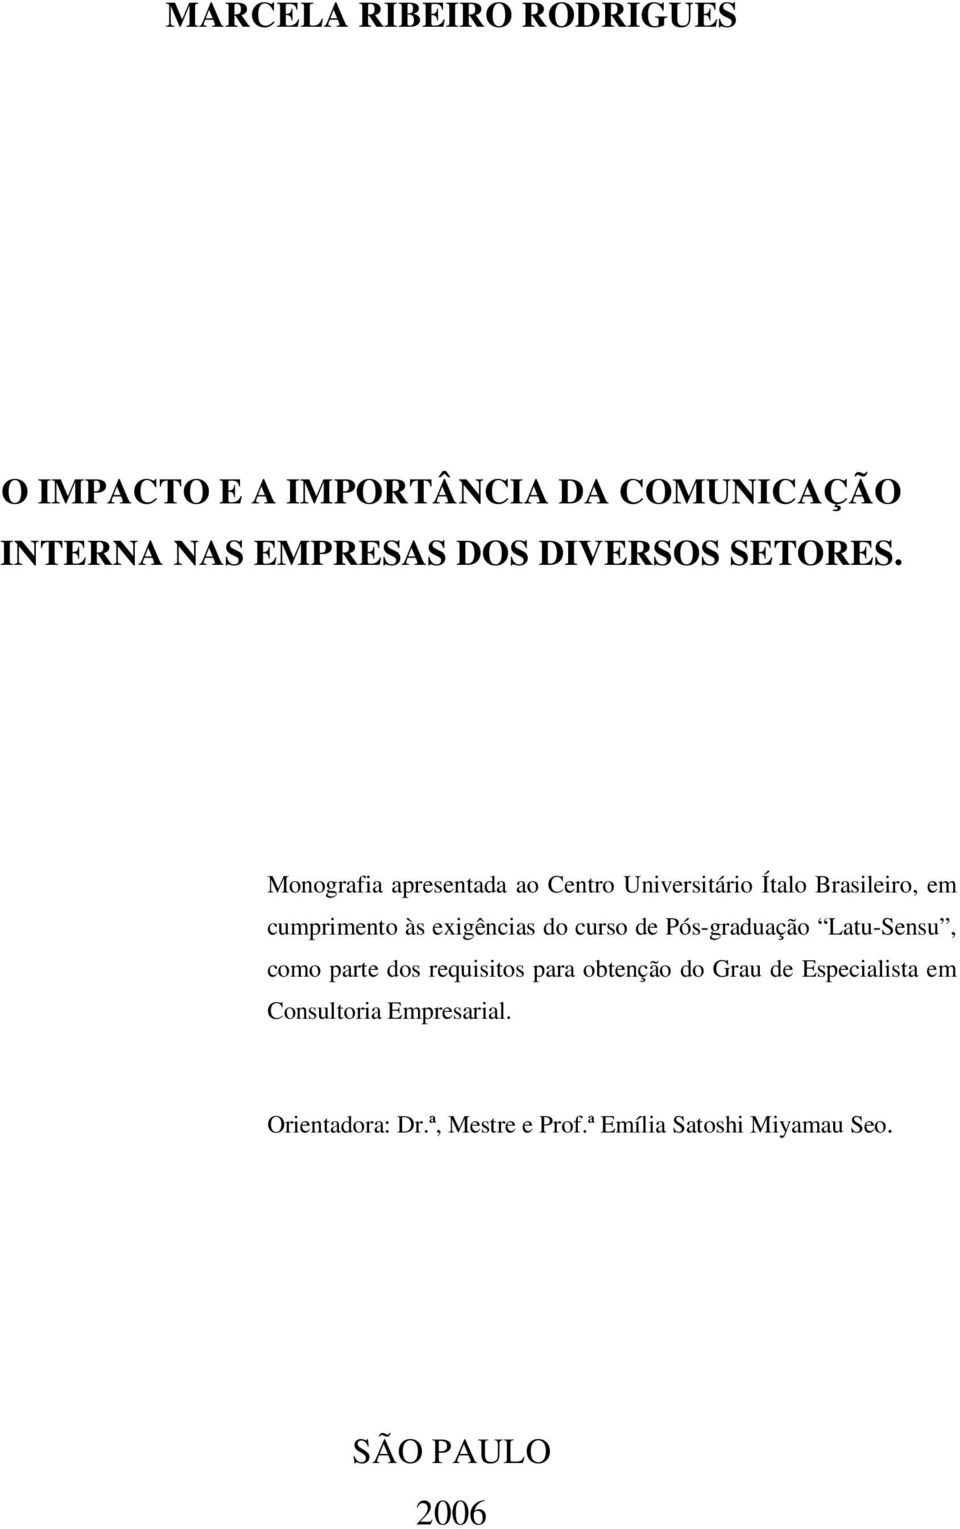 Monografia apresentada ao Centro Universitário Ítalo Brasileiro, em cumprimento às exigências do curso